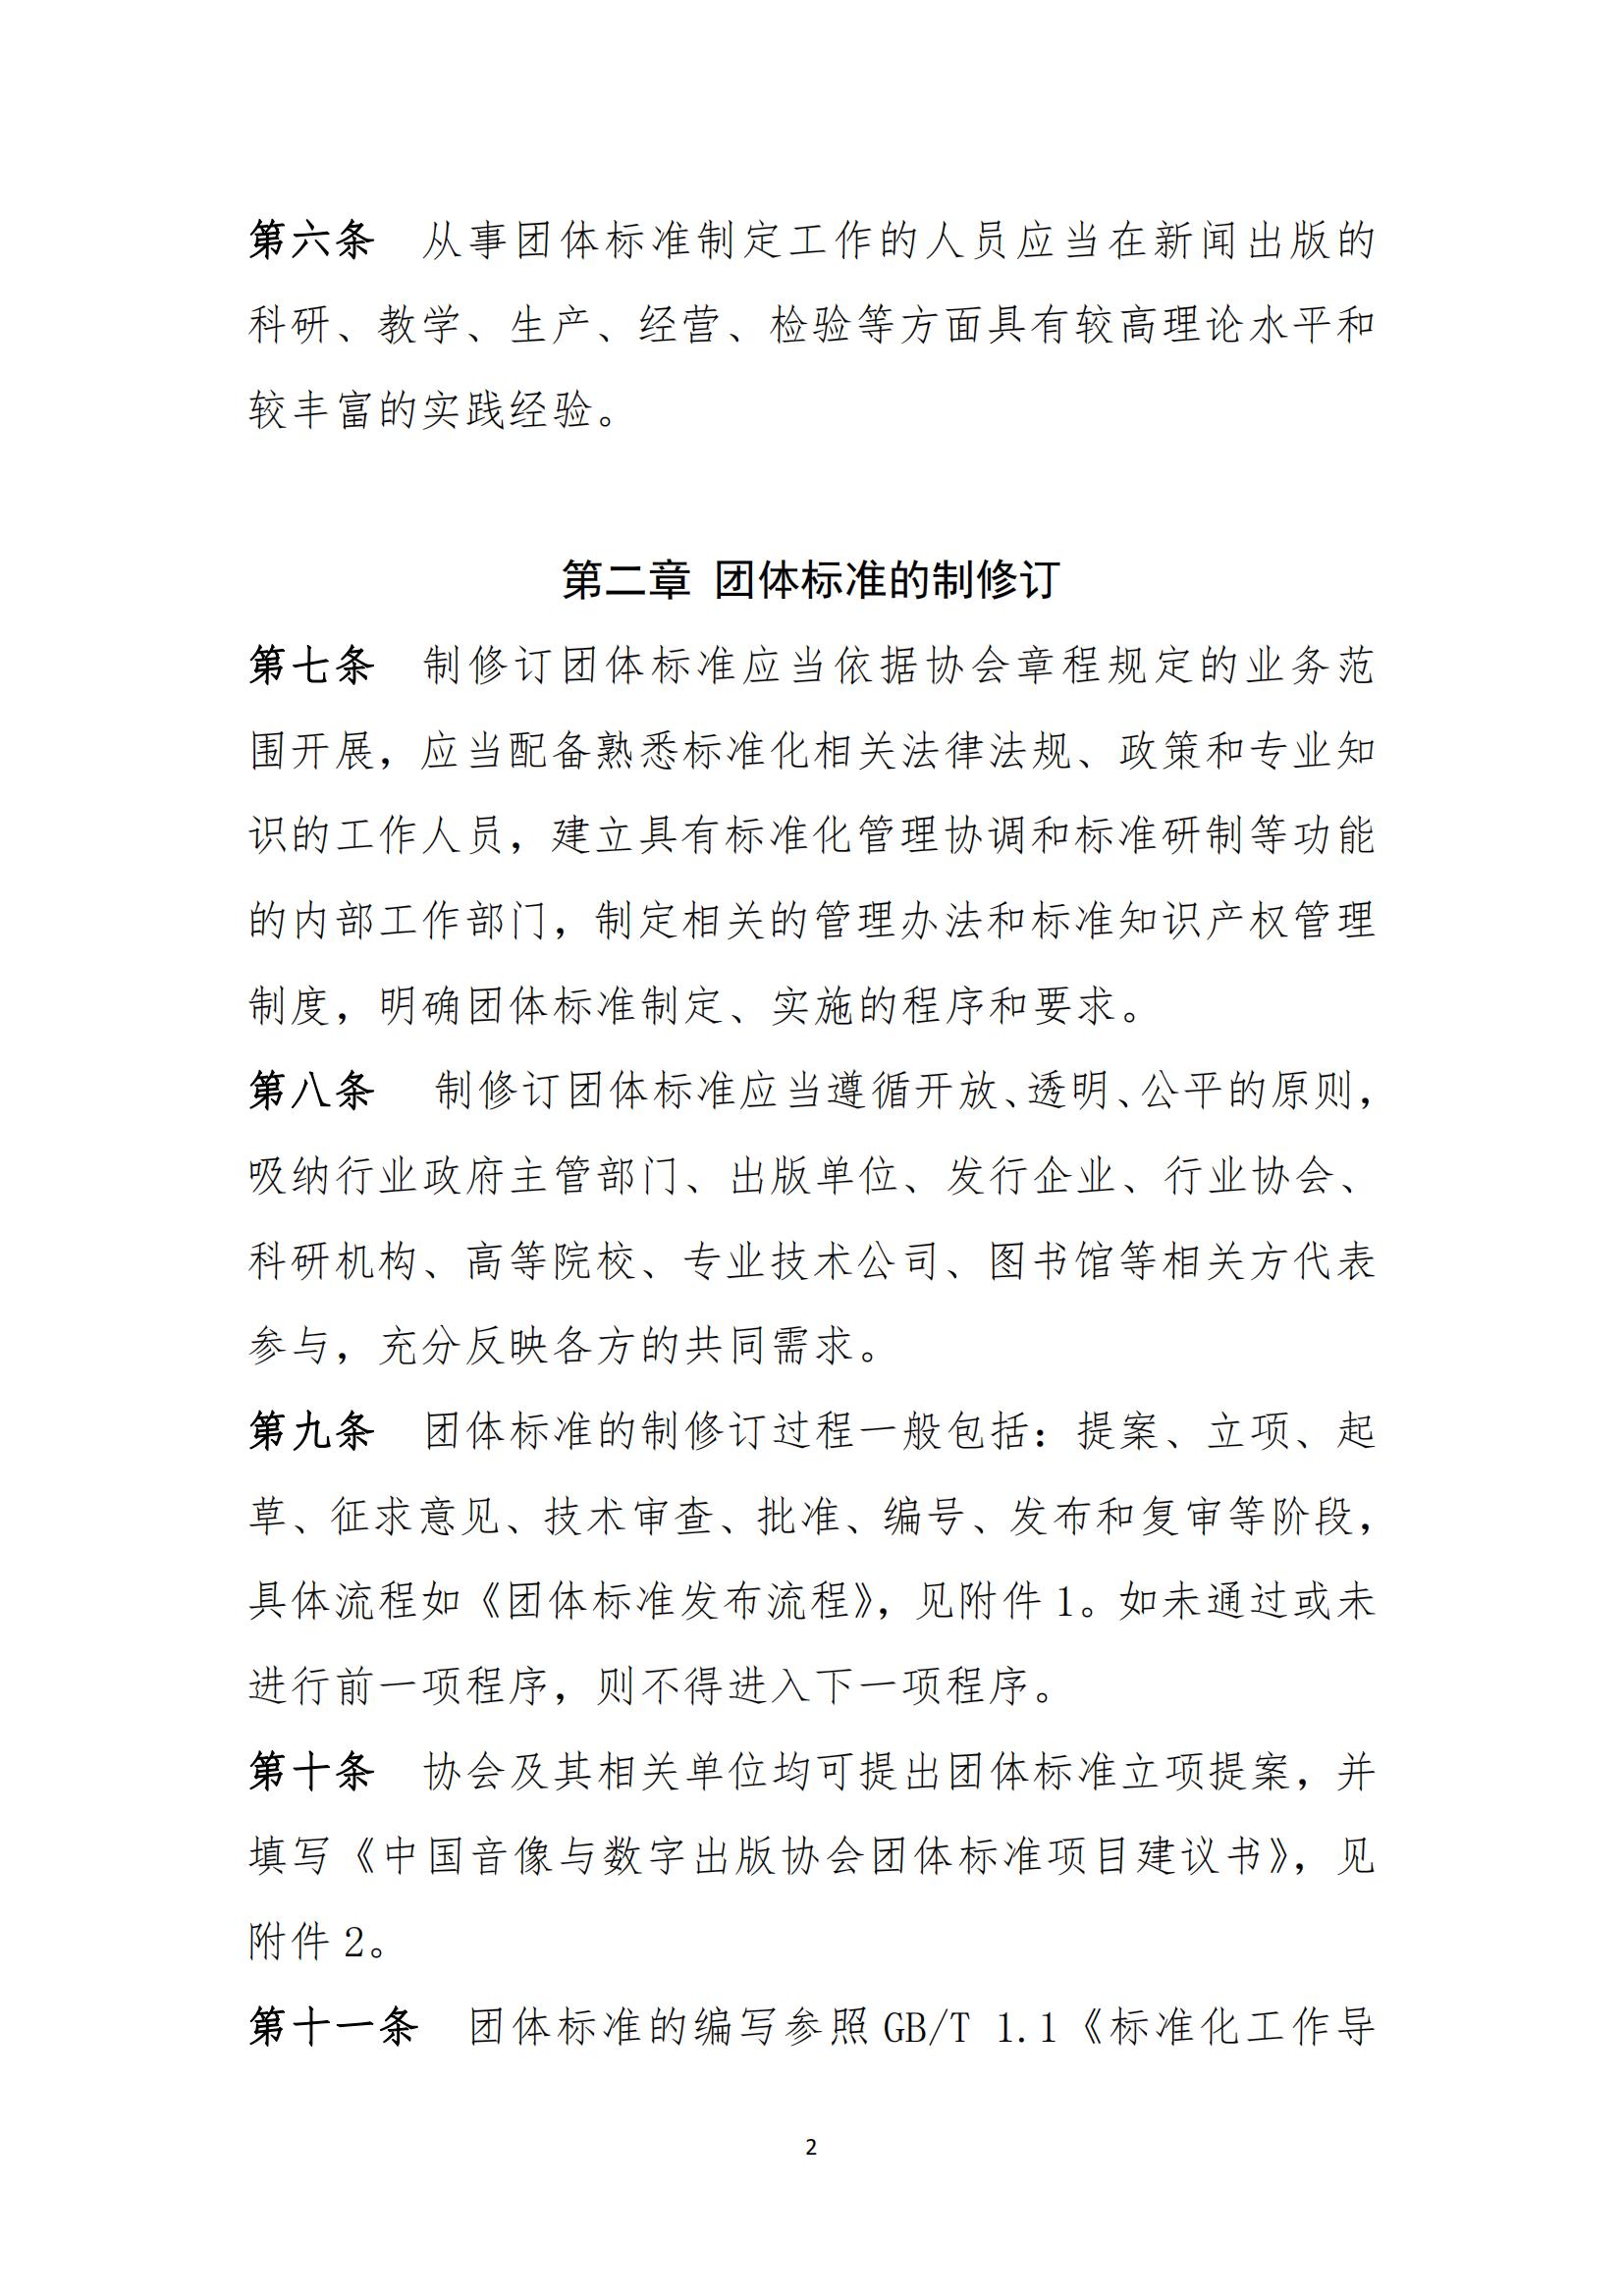 中國音像與數字出版協會團體標準管理規定(2)_01.jpg